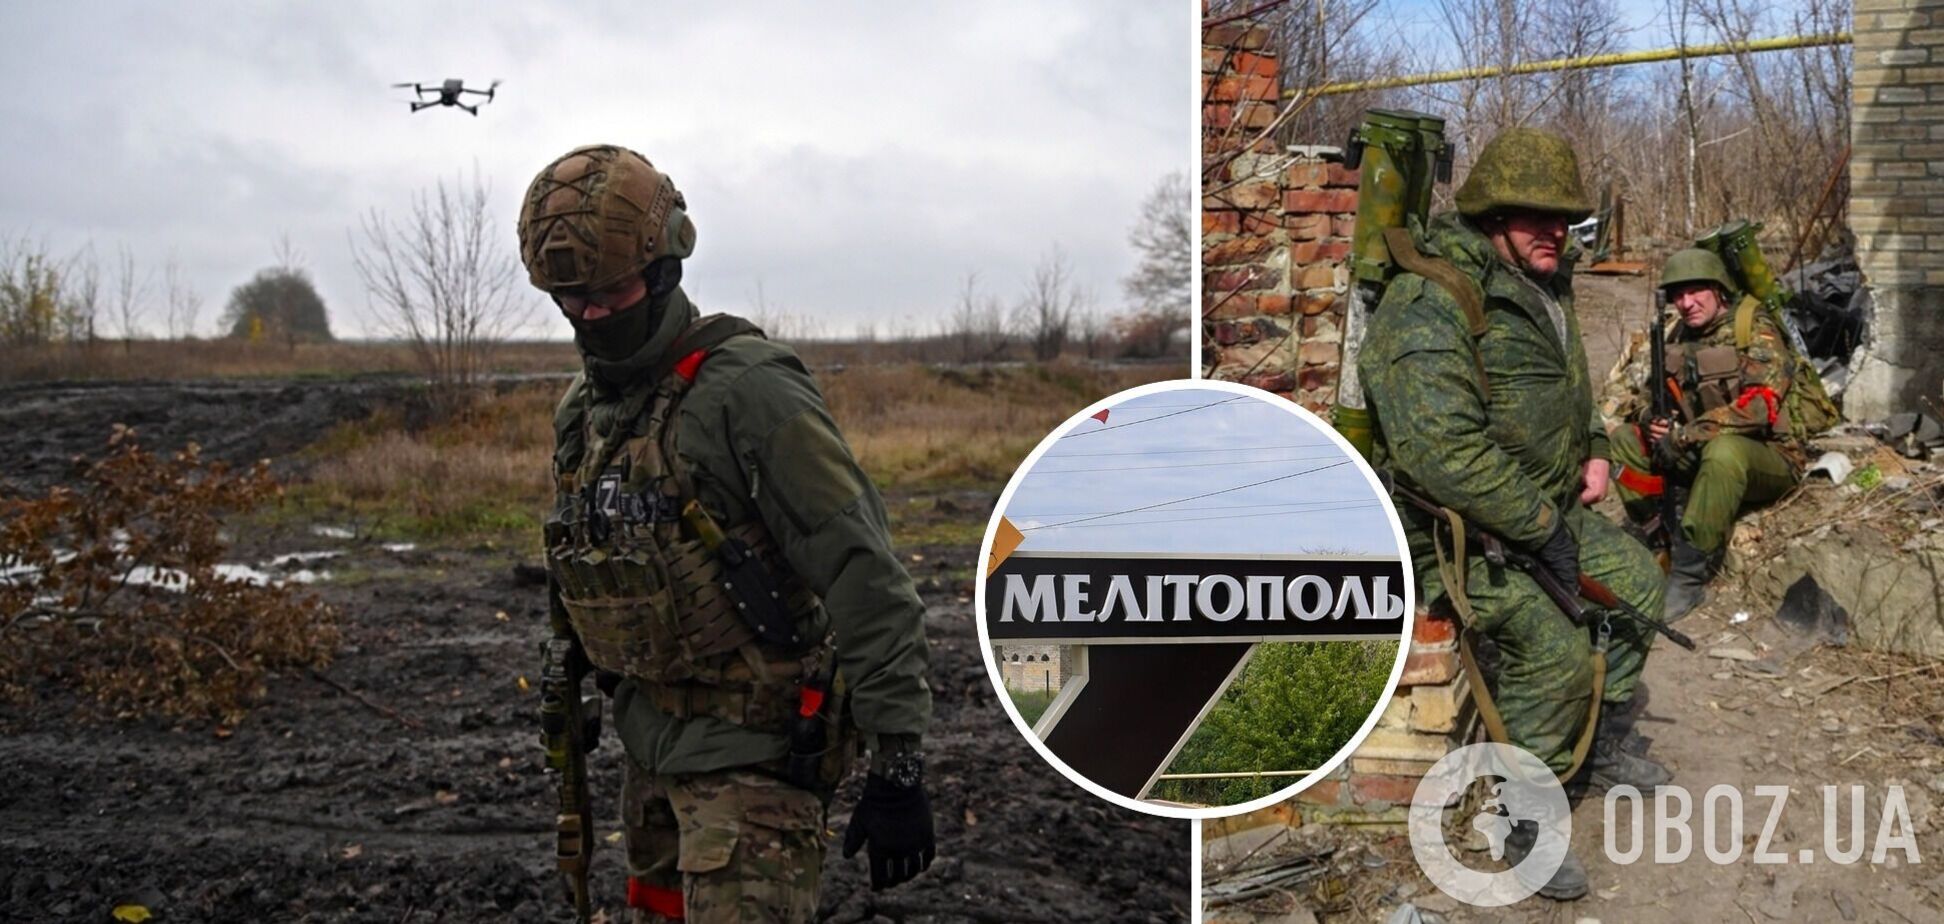 Собирают и испытывают БПЛА: войска России превратили Мелитополь в полигон